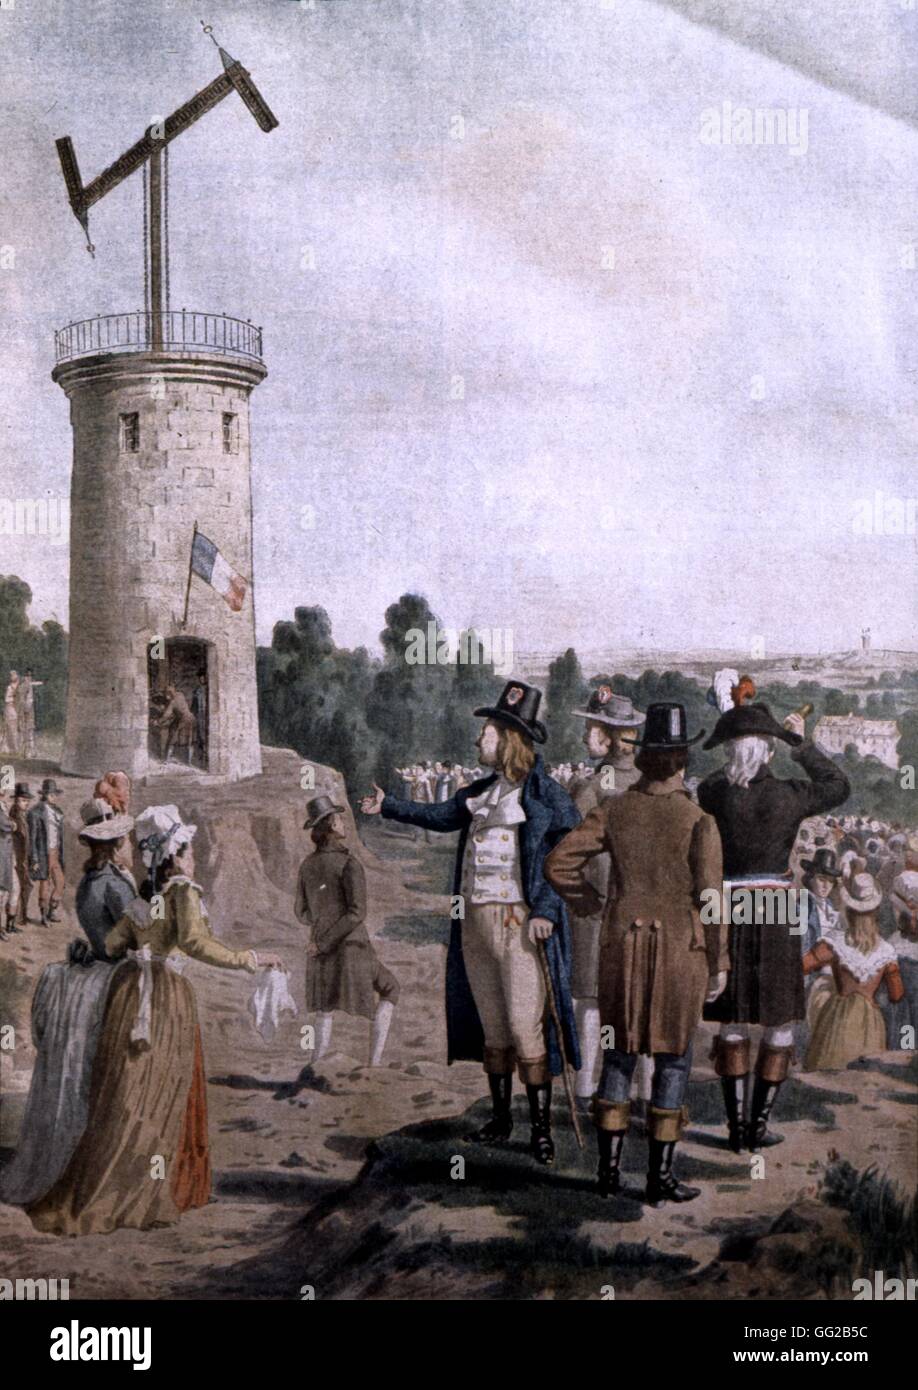 Gravur Tribut zur Erfindung des Telegrafen von Claude Chappe, 12. Juli 1793, in "Le Petit Journal" 1901 Frankreich Edouard Rousseau Sammlung Stockfoto